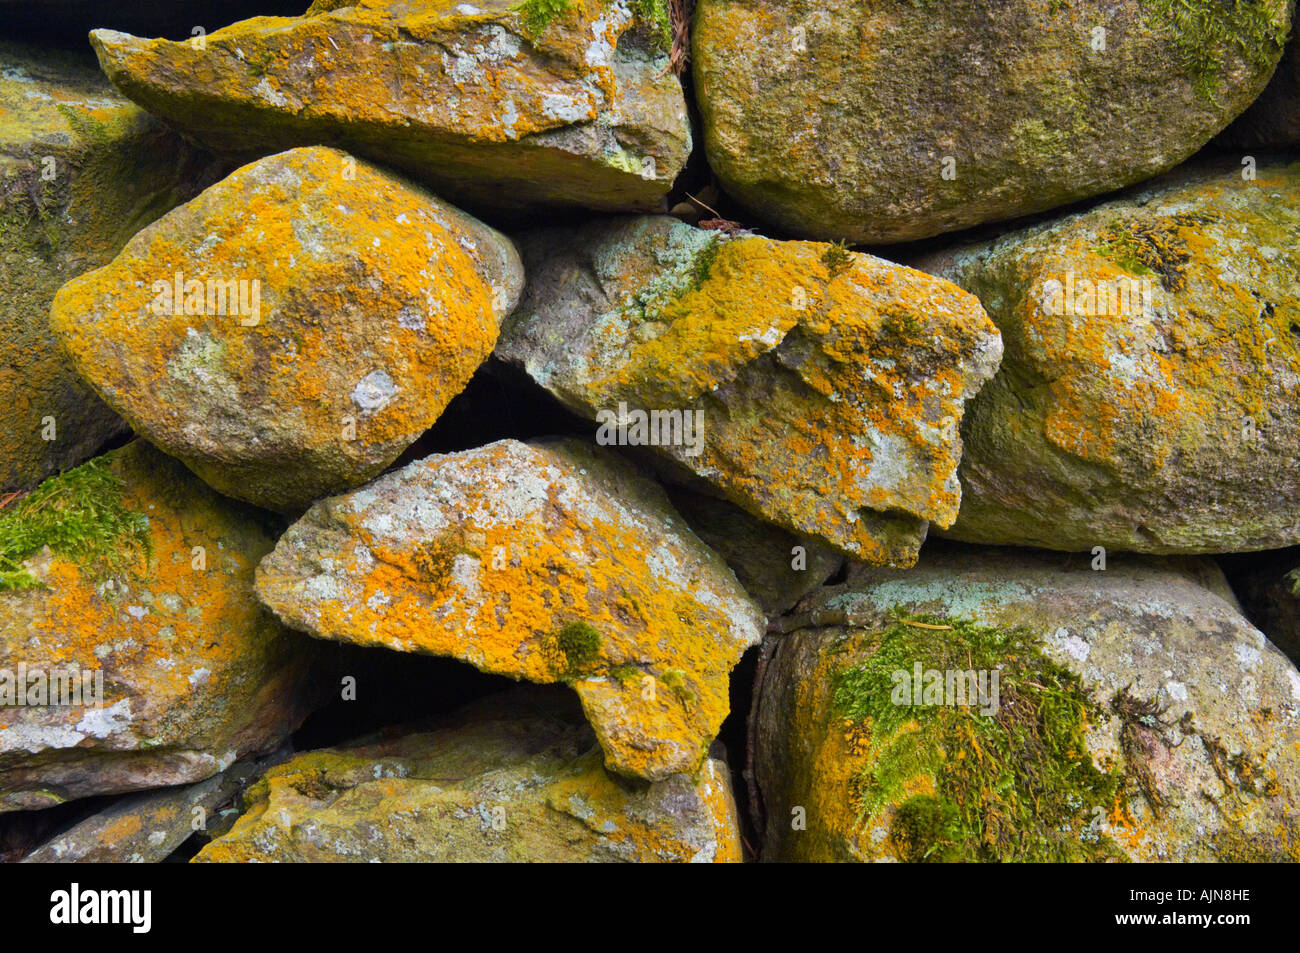 Un muro de piedra seca tradicionales cubiertos de musgo y líquenes en el Parque Nacional Lake District Cumbria, Inglaterra. Foto de stock